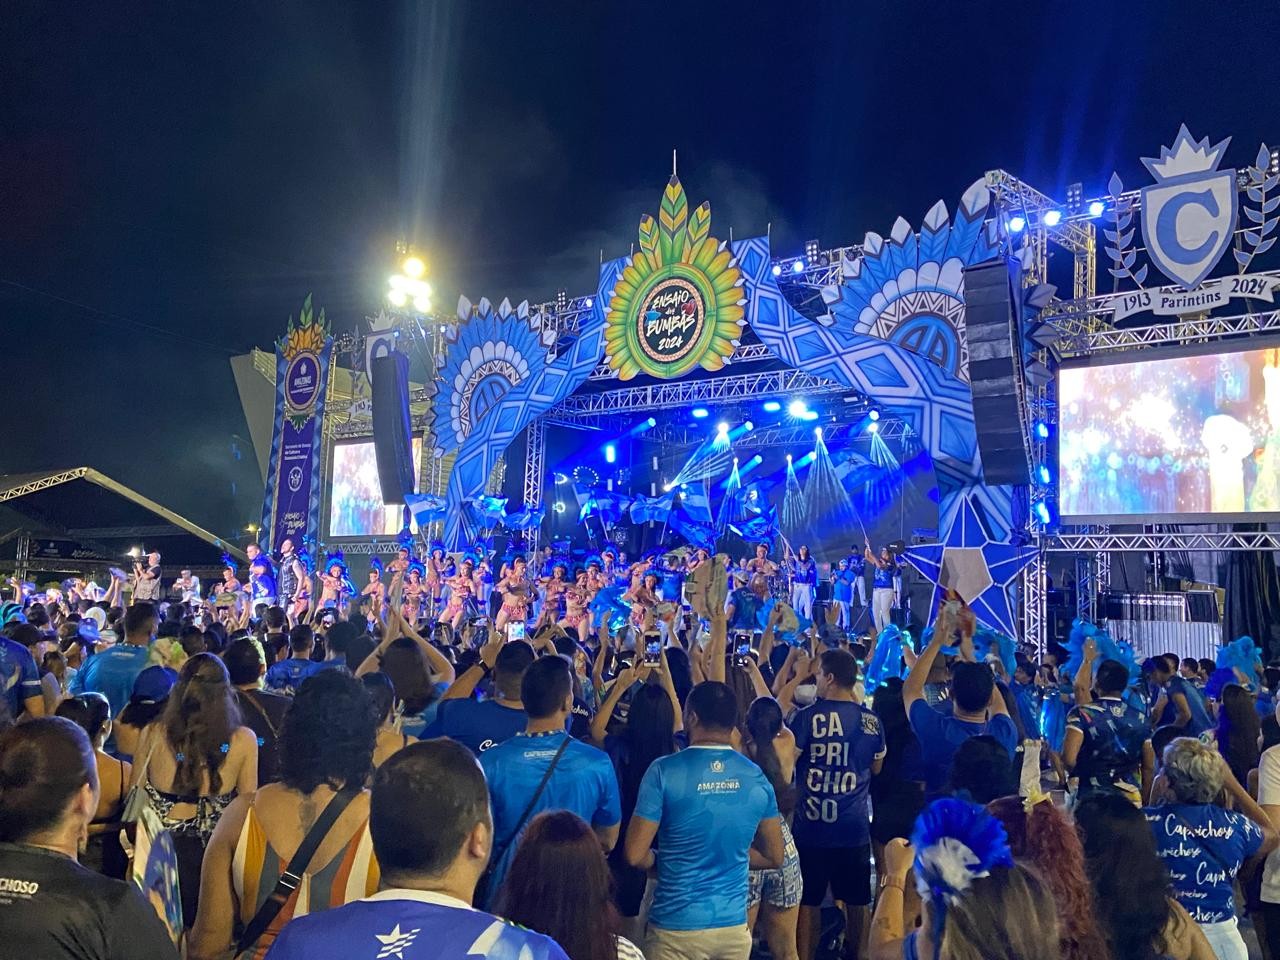 Festa de lançamento do álbum do Caprichoso em Manaus reúne multidão